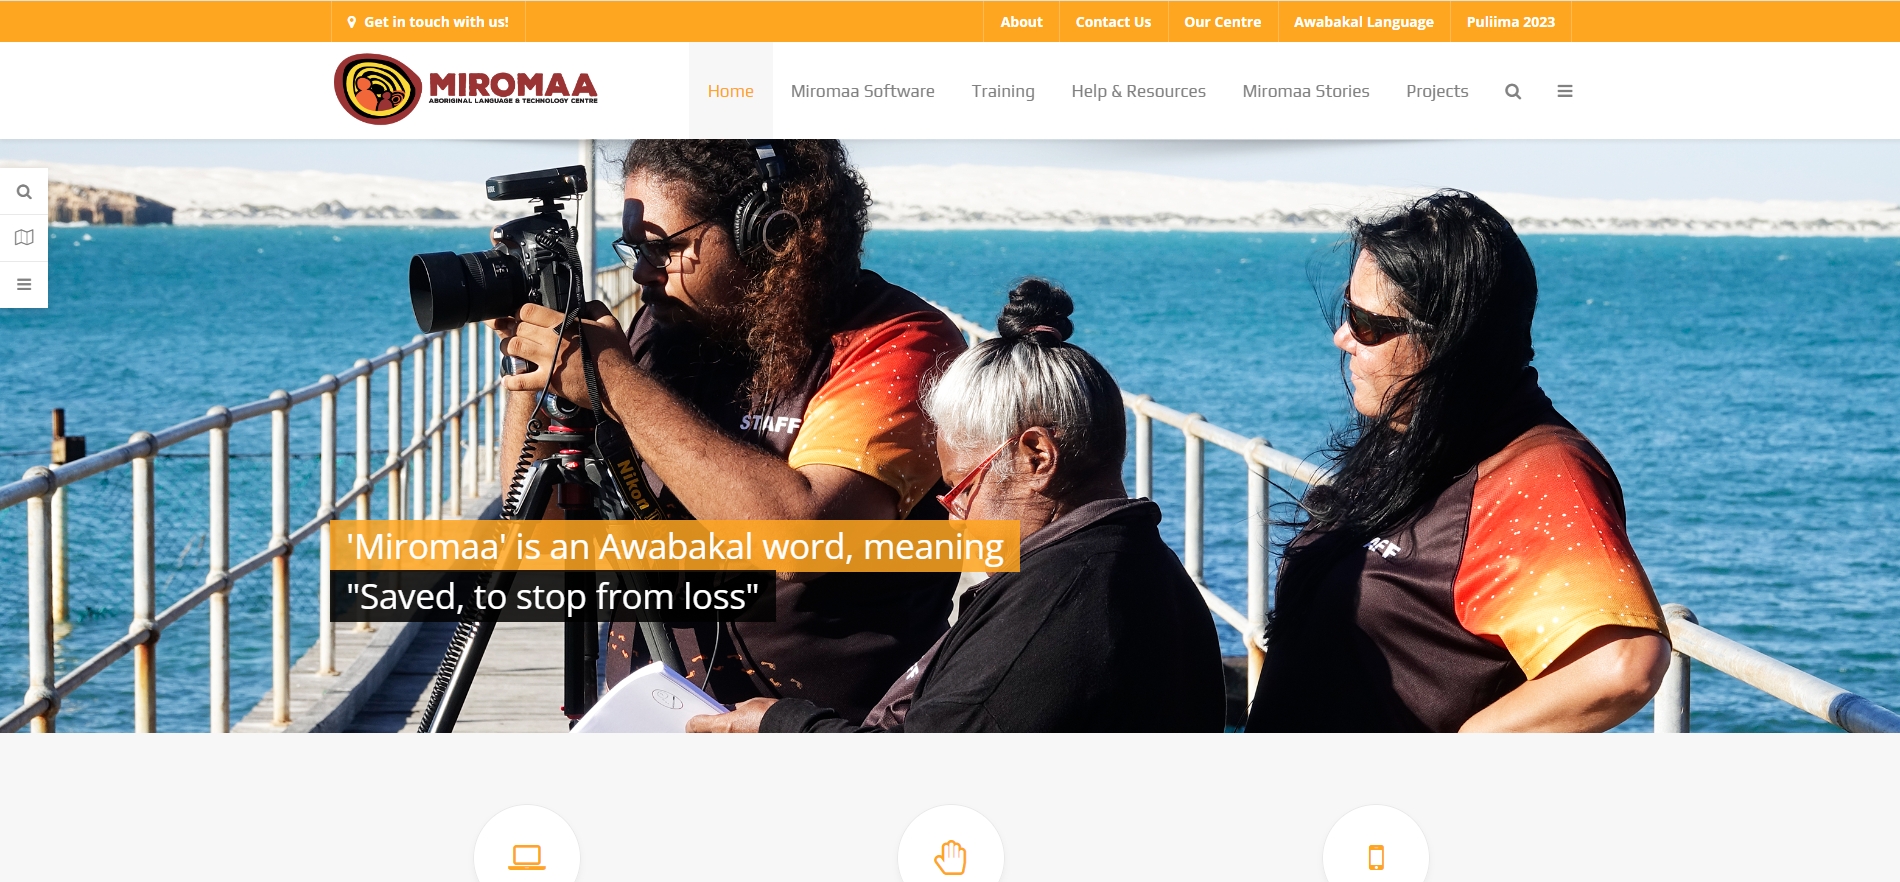 部落格封面：【網站】Miromaa 米羅瑪原住民語言及科技中心